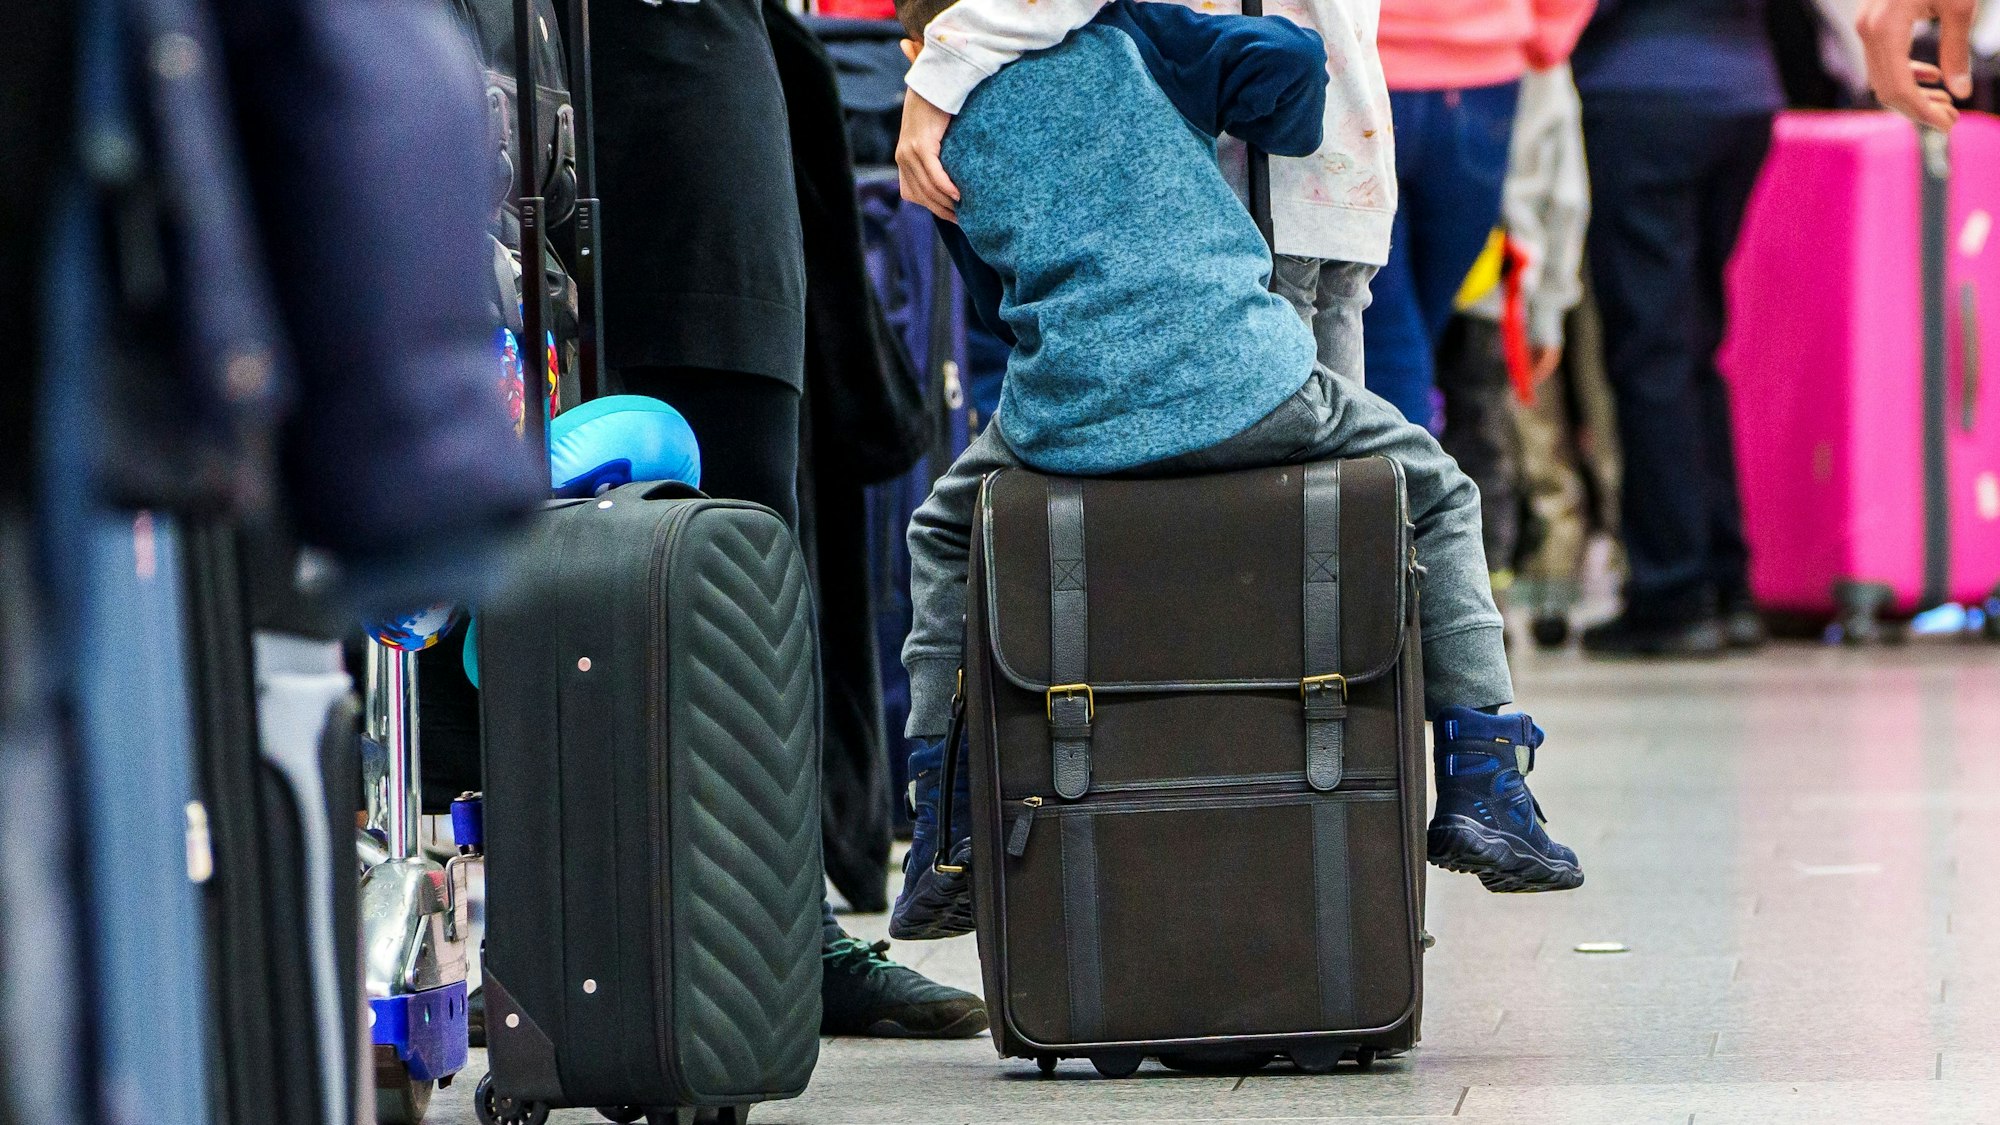 Ein Kind sitzt in der Warteschlange auf seinem Koffer.